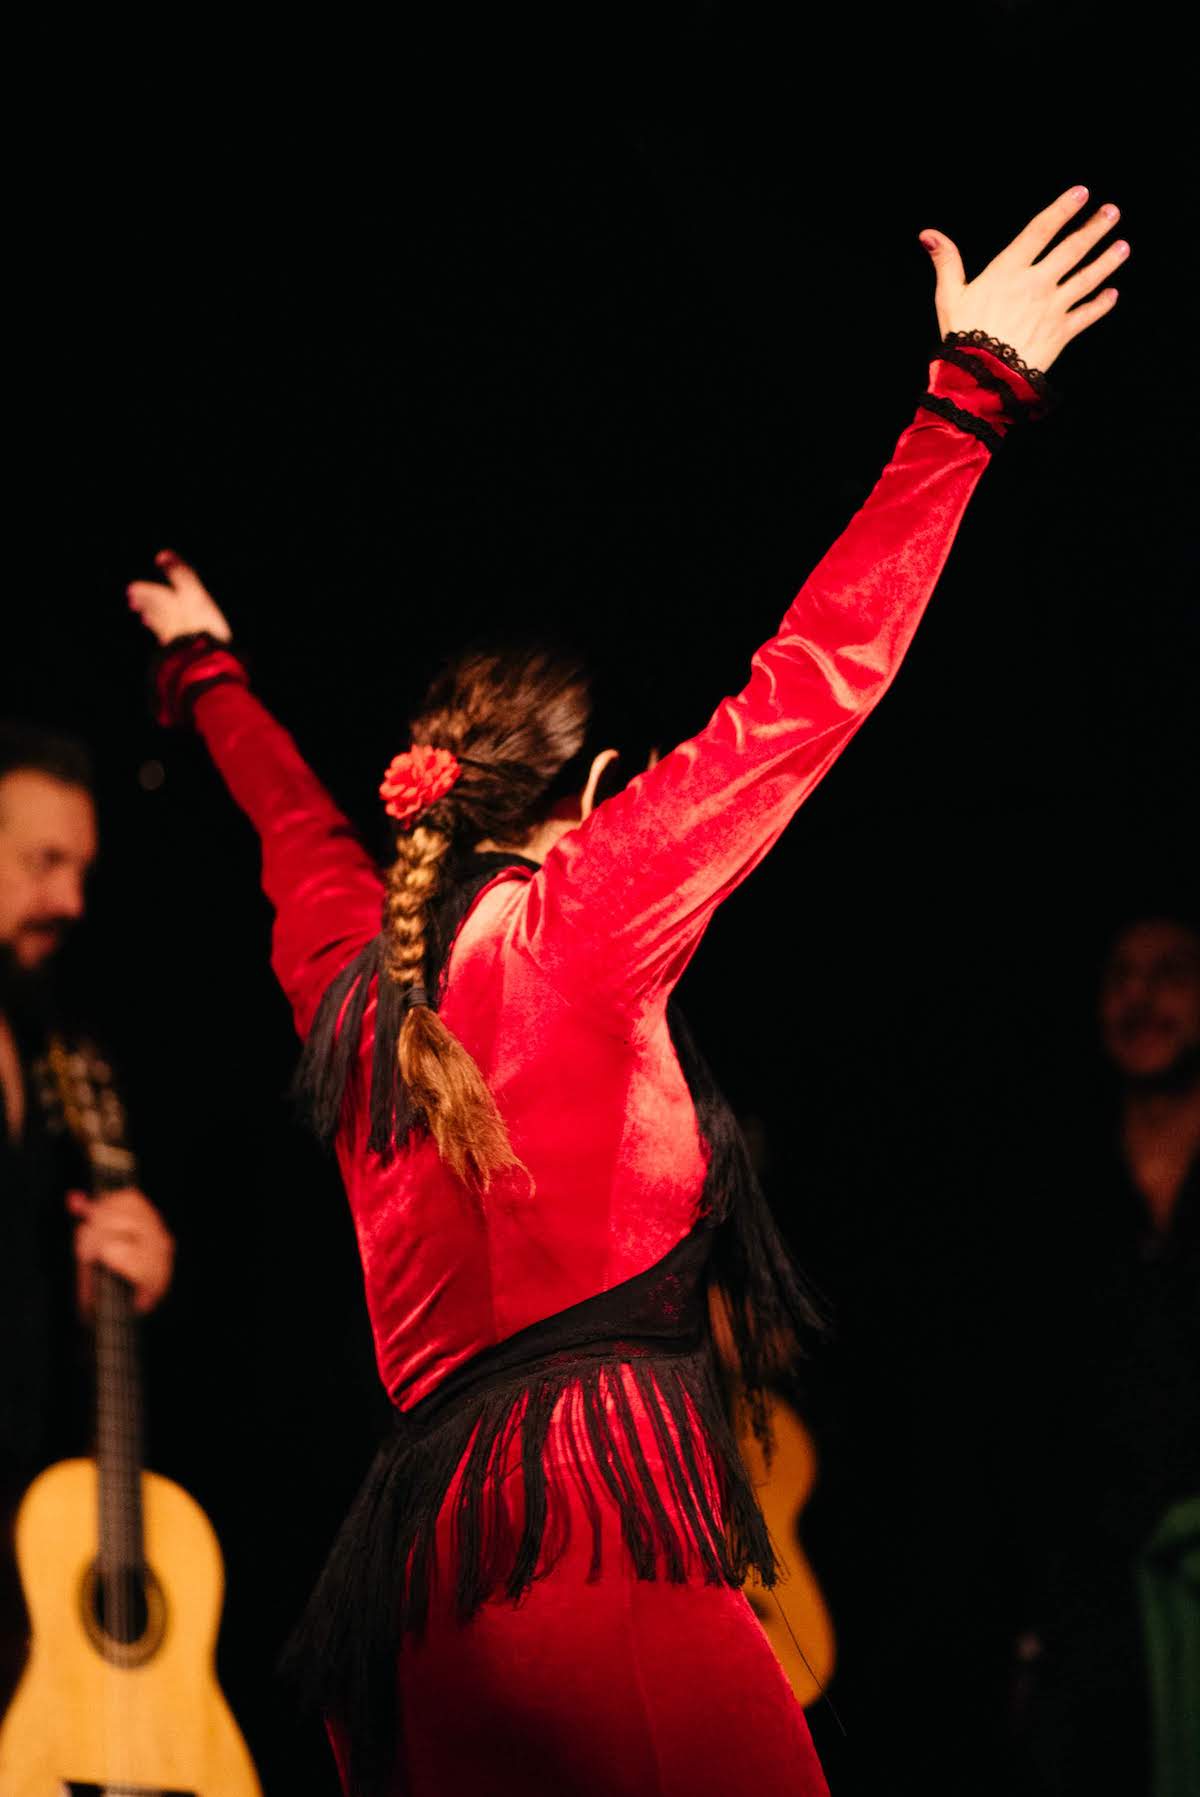 Woman wearing a red dress dancing flamenco.